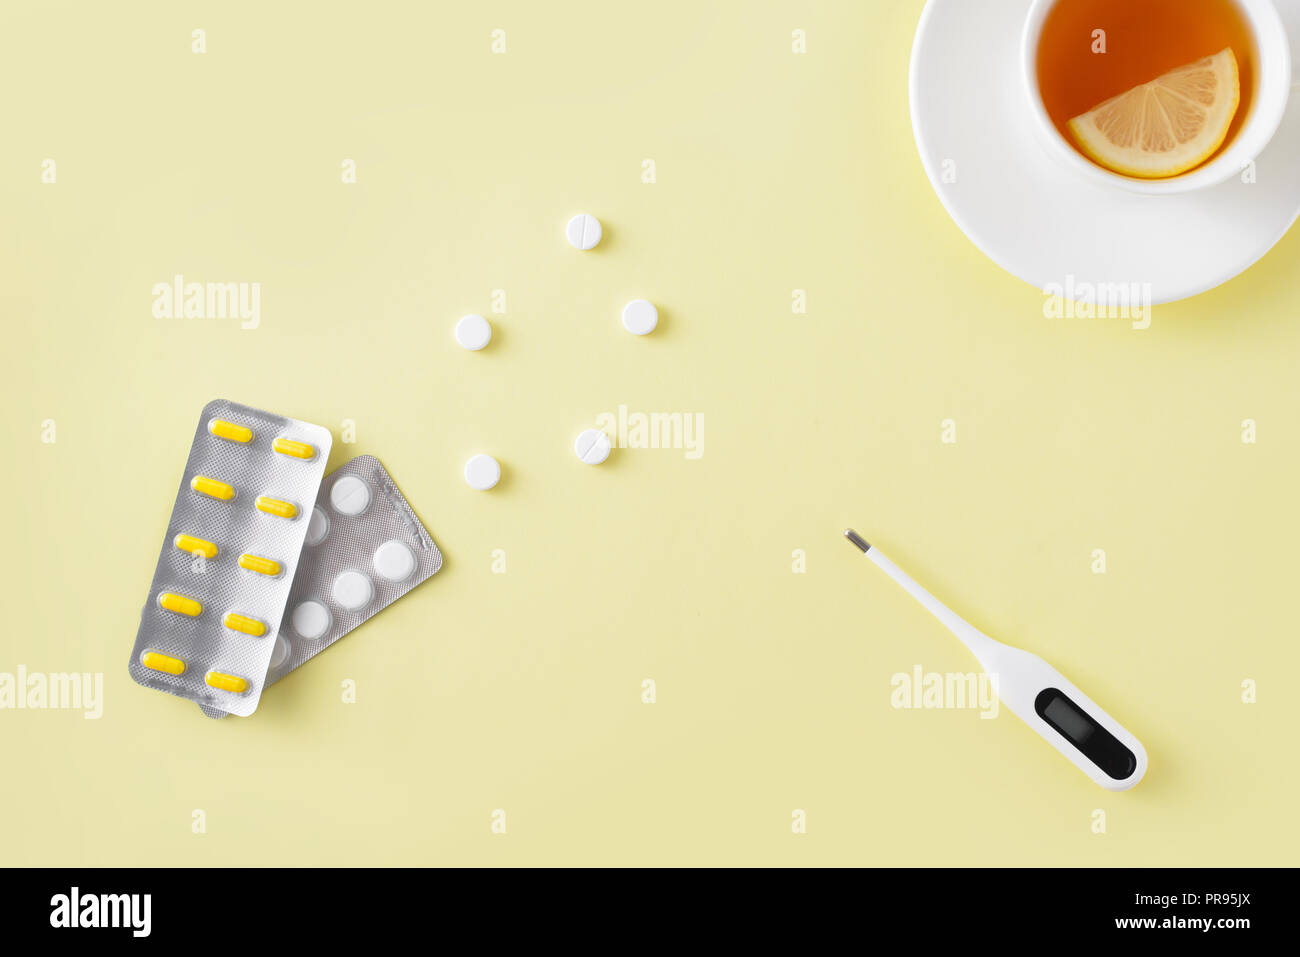 Pillole, termometro e tazza di tè su sfondo giallo. Raffreddore e influenza il trattamento impostato. Appartamento laico, vista dall'alto. Copia gratuita dello spazio. Foto Stock